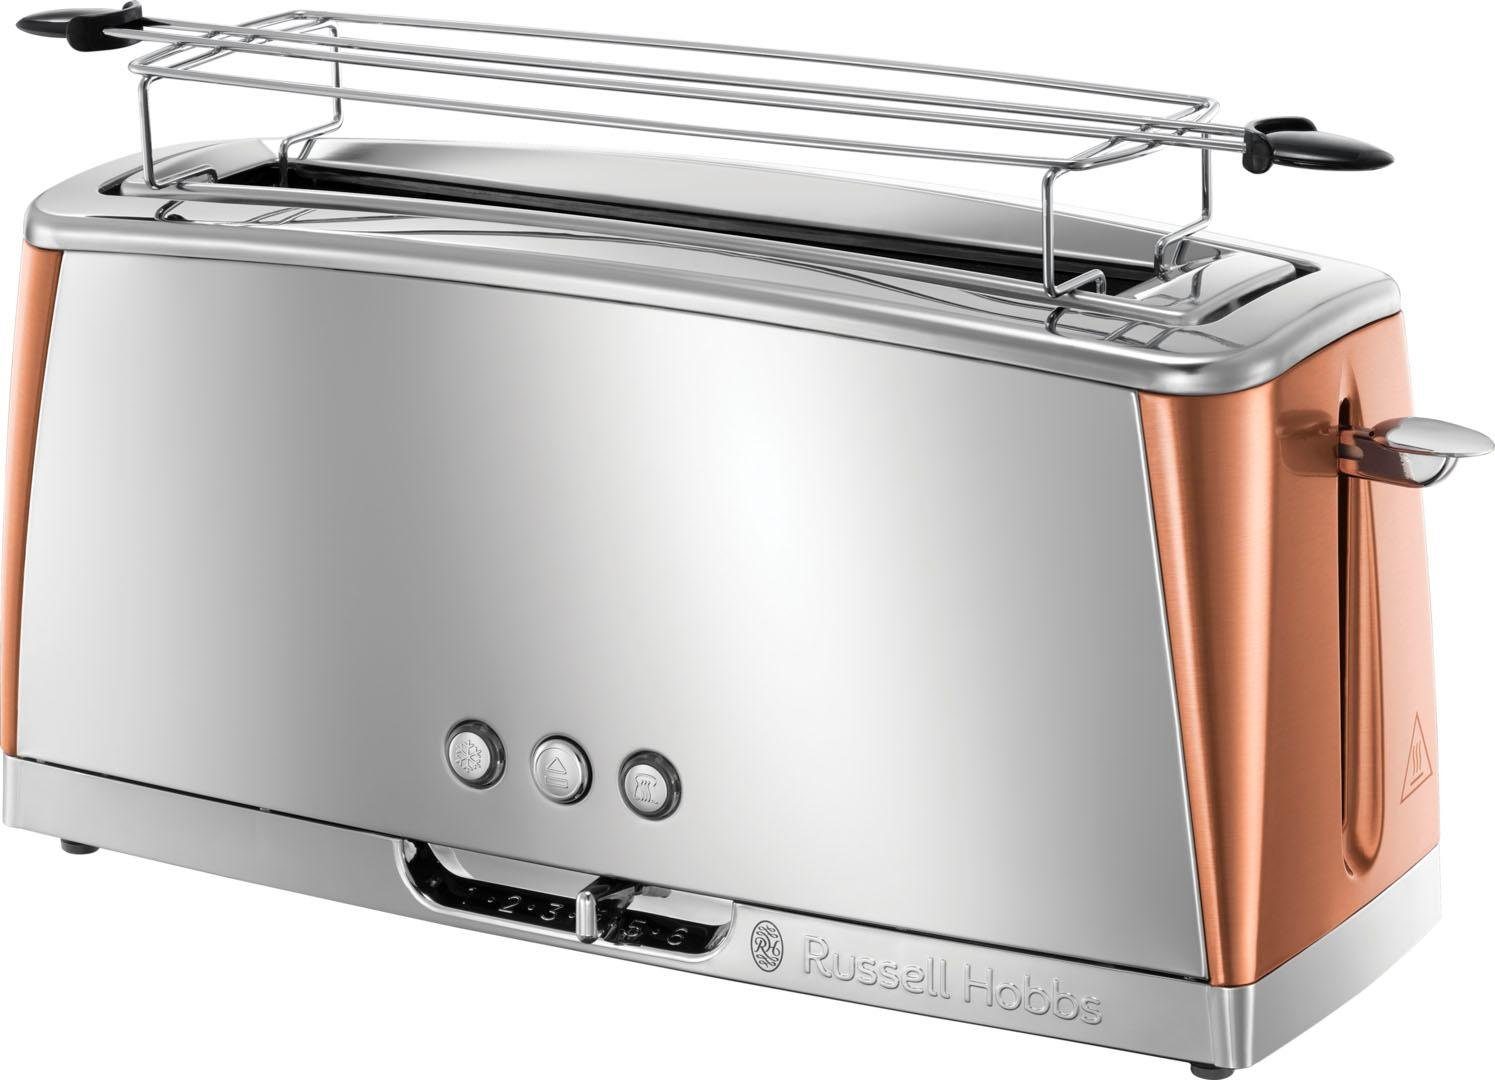 Copper Luna für 2 1420 1 HOBBS Schlitz, RUSSELL Scheiben, 24310-56, W langer Toaster Accents